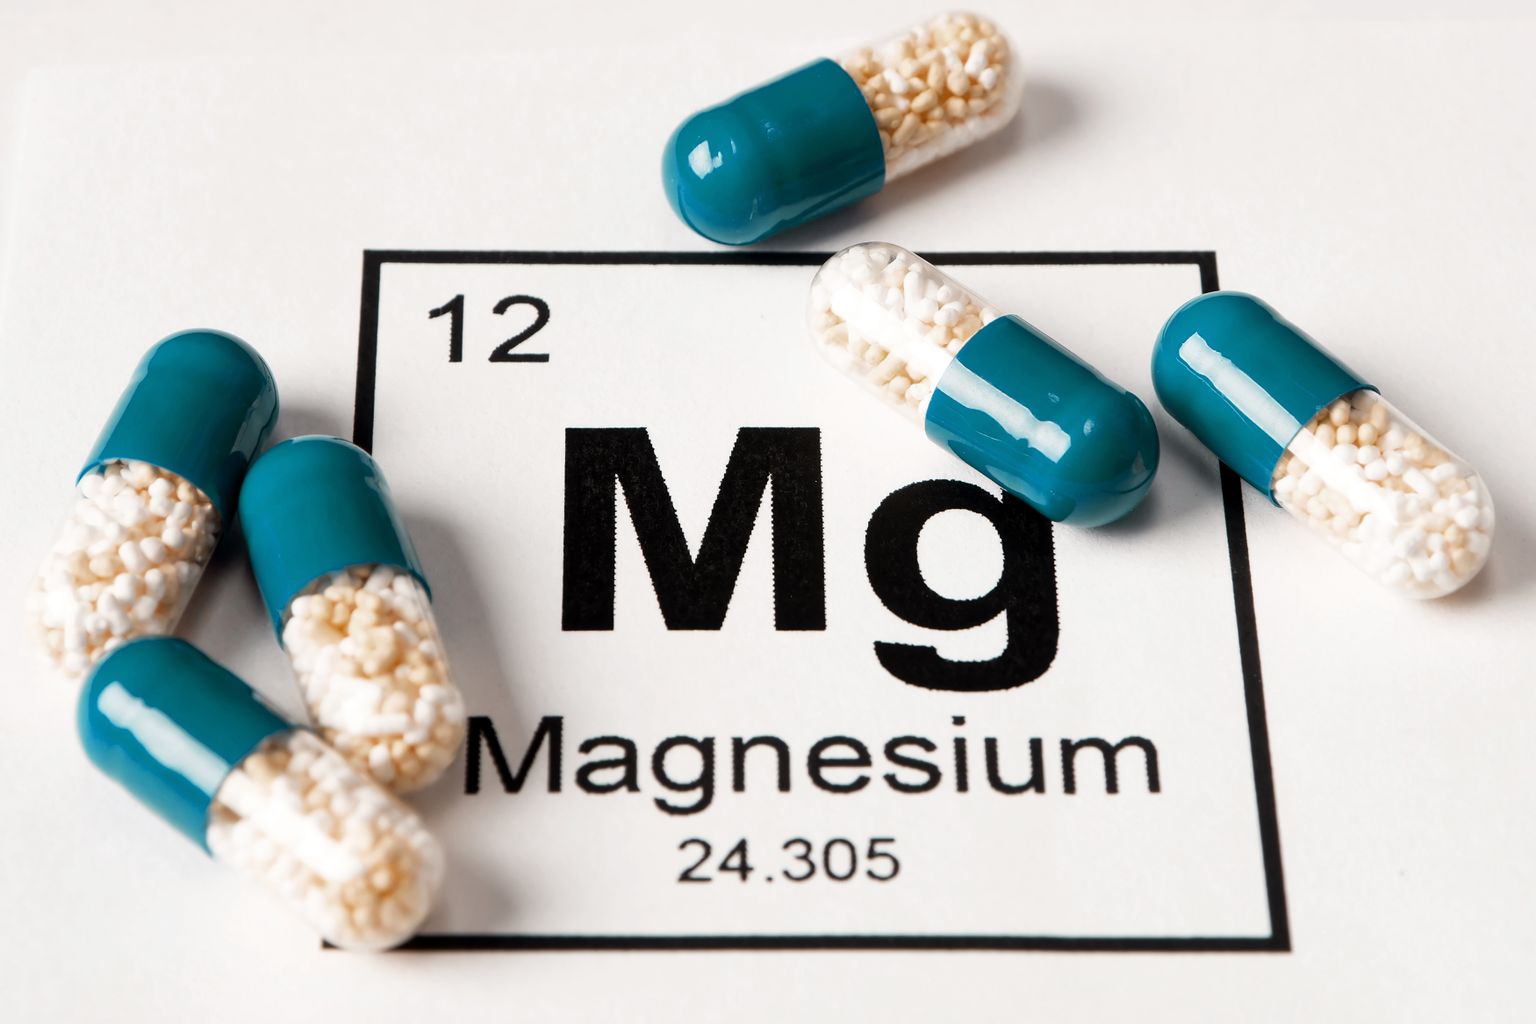 Magneesium võib aidata migreeni leevendada või ennetada, kuid seda pole teaduslikult kinnitatud.